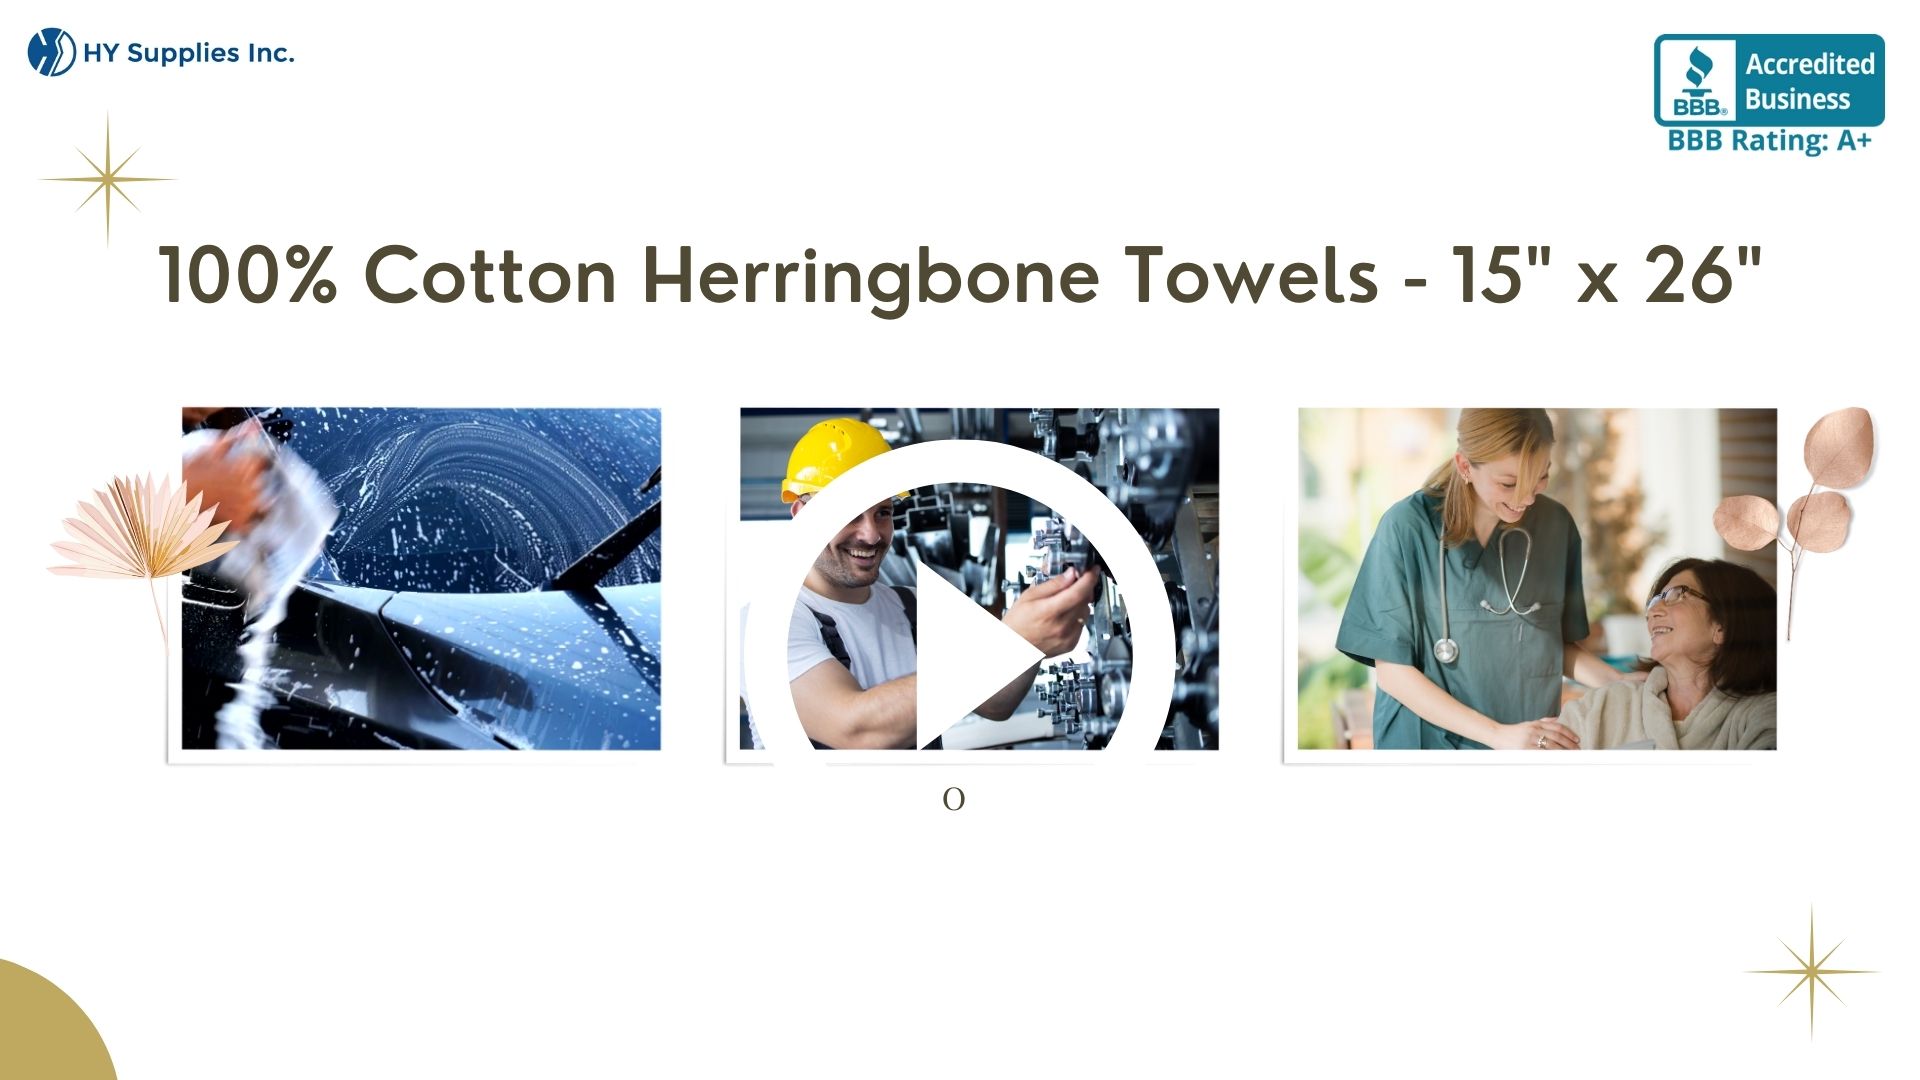 100% Cotton Herringbone Towels - 15" x 26"